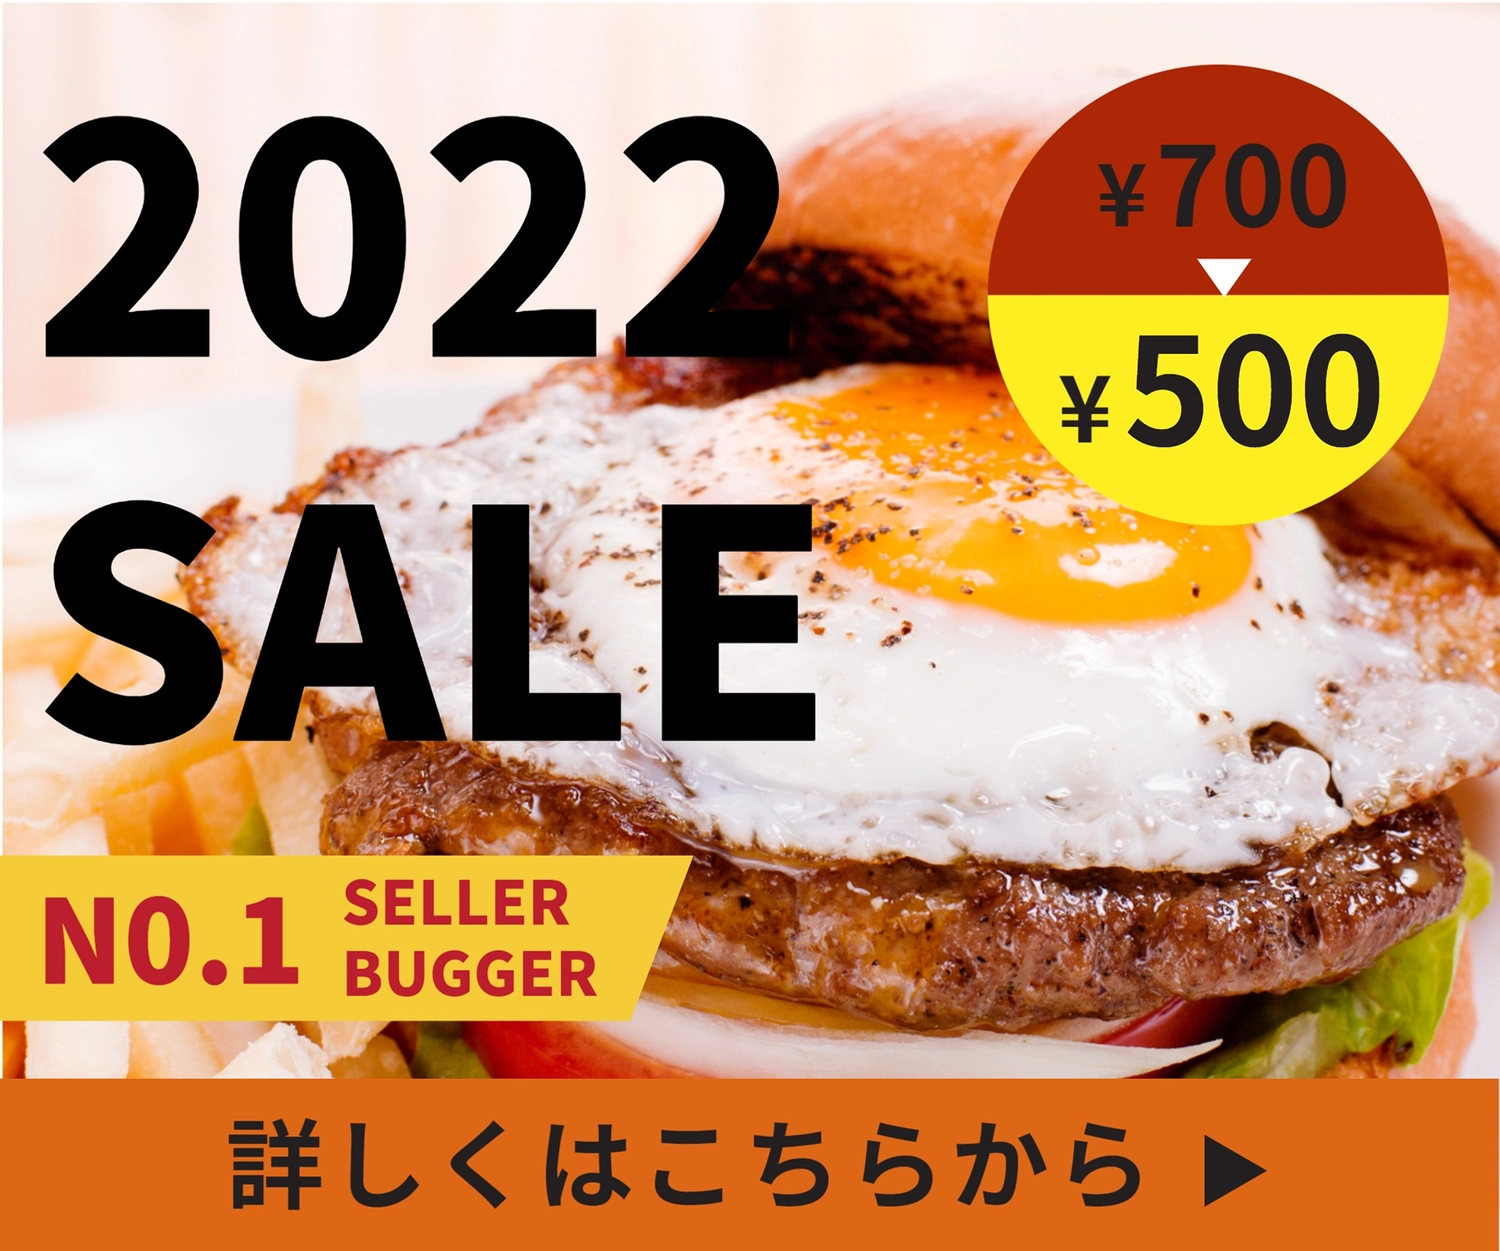 ハンバーガー写真のセールバナー, miễn giảm, thiết kế, chỉnh sửa, banner mẫu